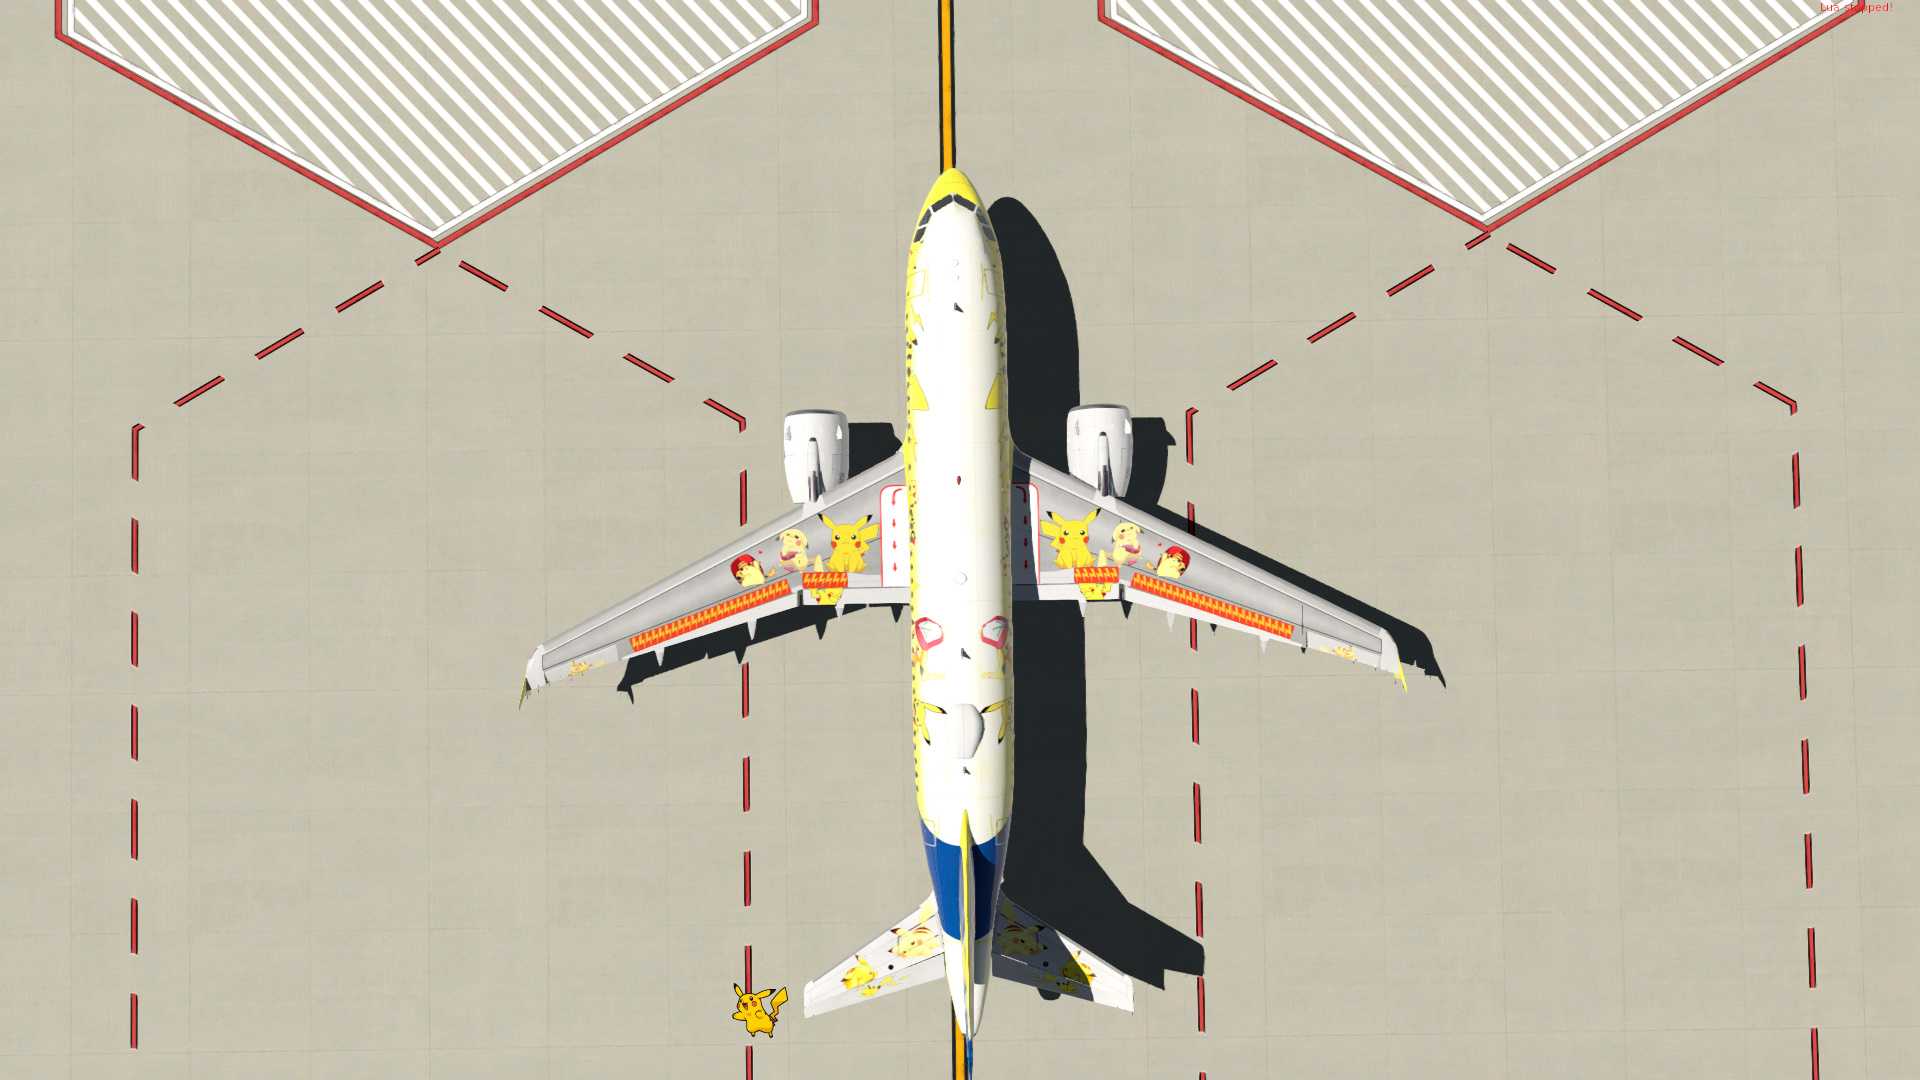 【X-Plane11】空客A319皮卡丘涂装 1.0-5363 